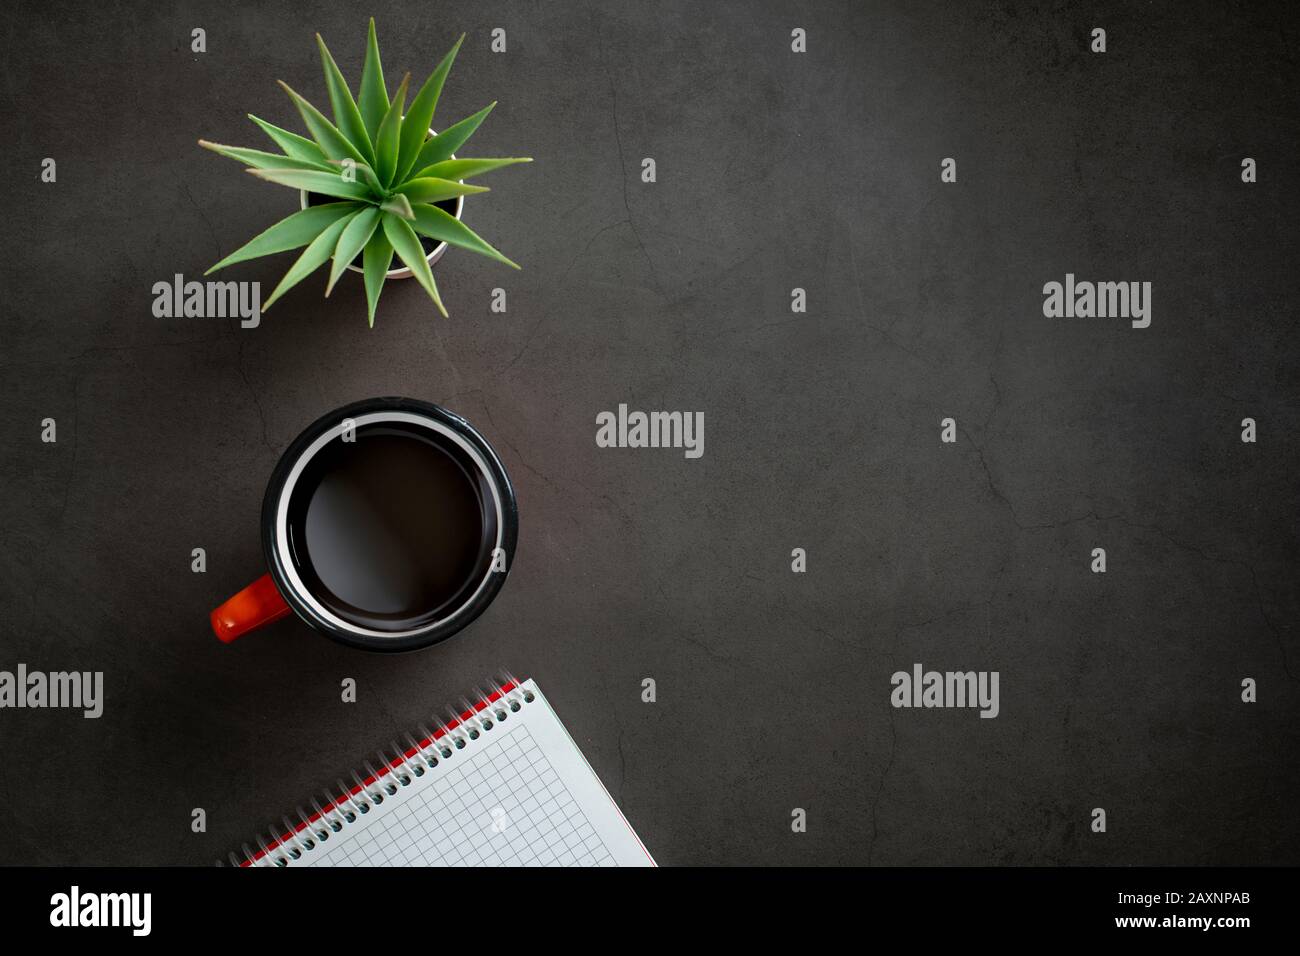 vue du dessus de la table avec bloc-notes, café et plante sur fond noir. Banque D'Images